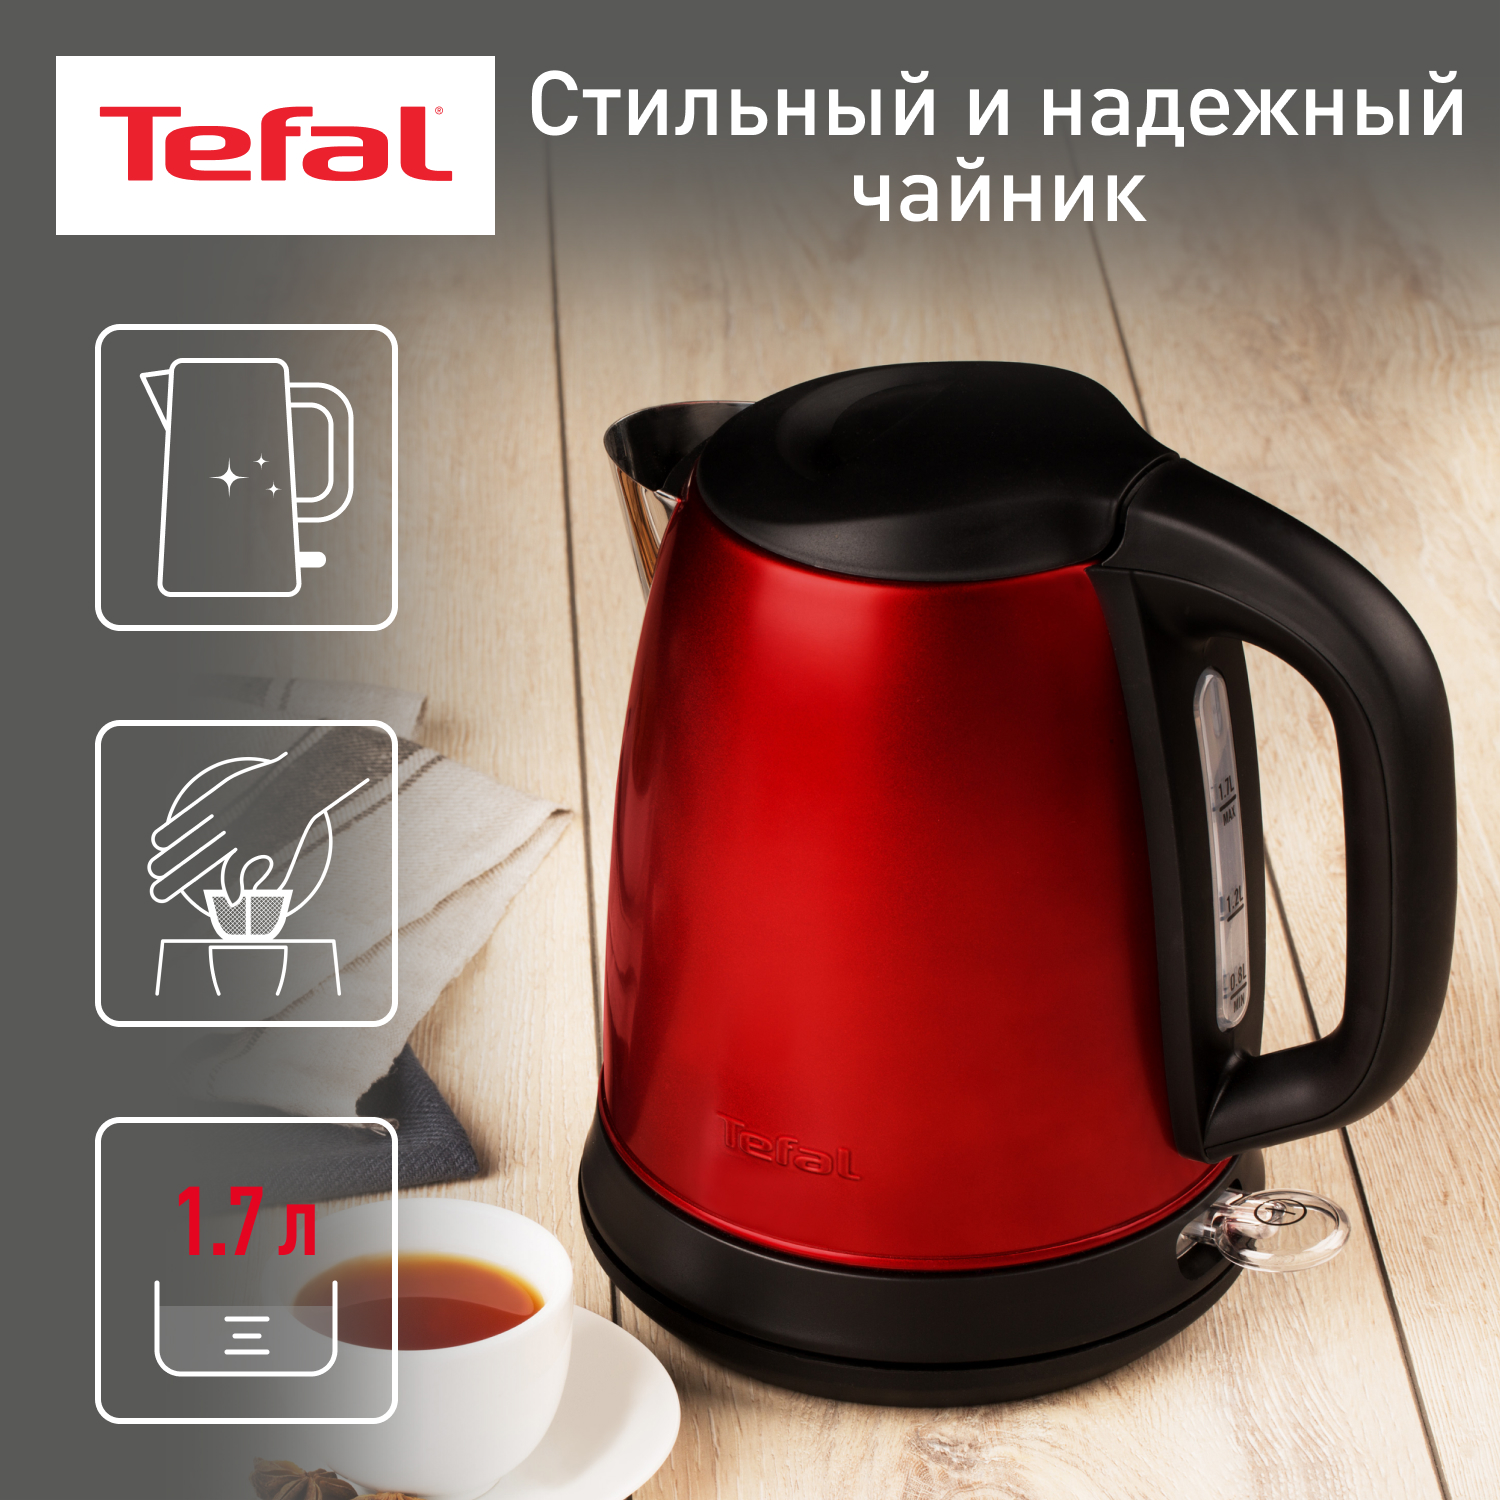 Чайник электрический Tefal Confidence KI270530, 1.7 л, красный/черный